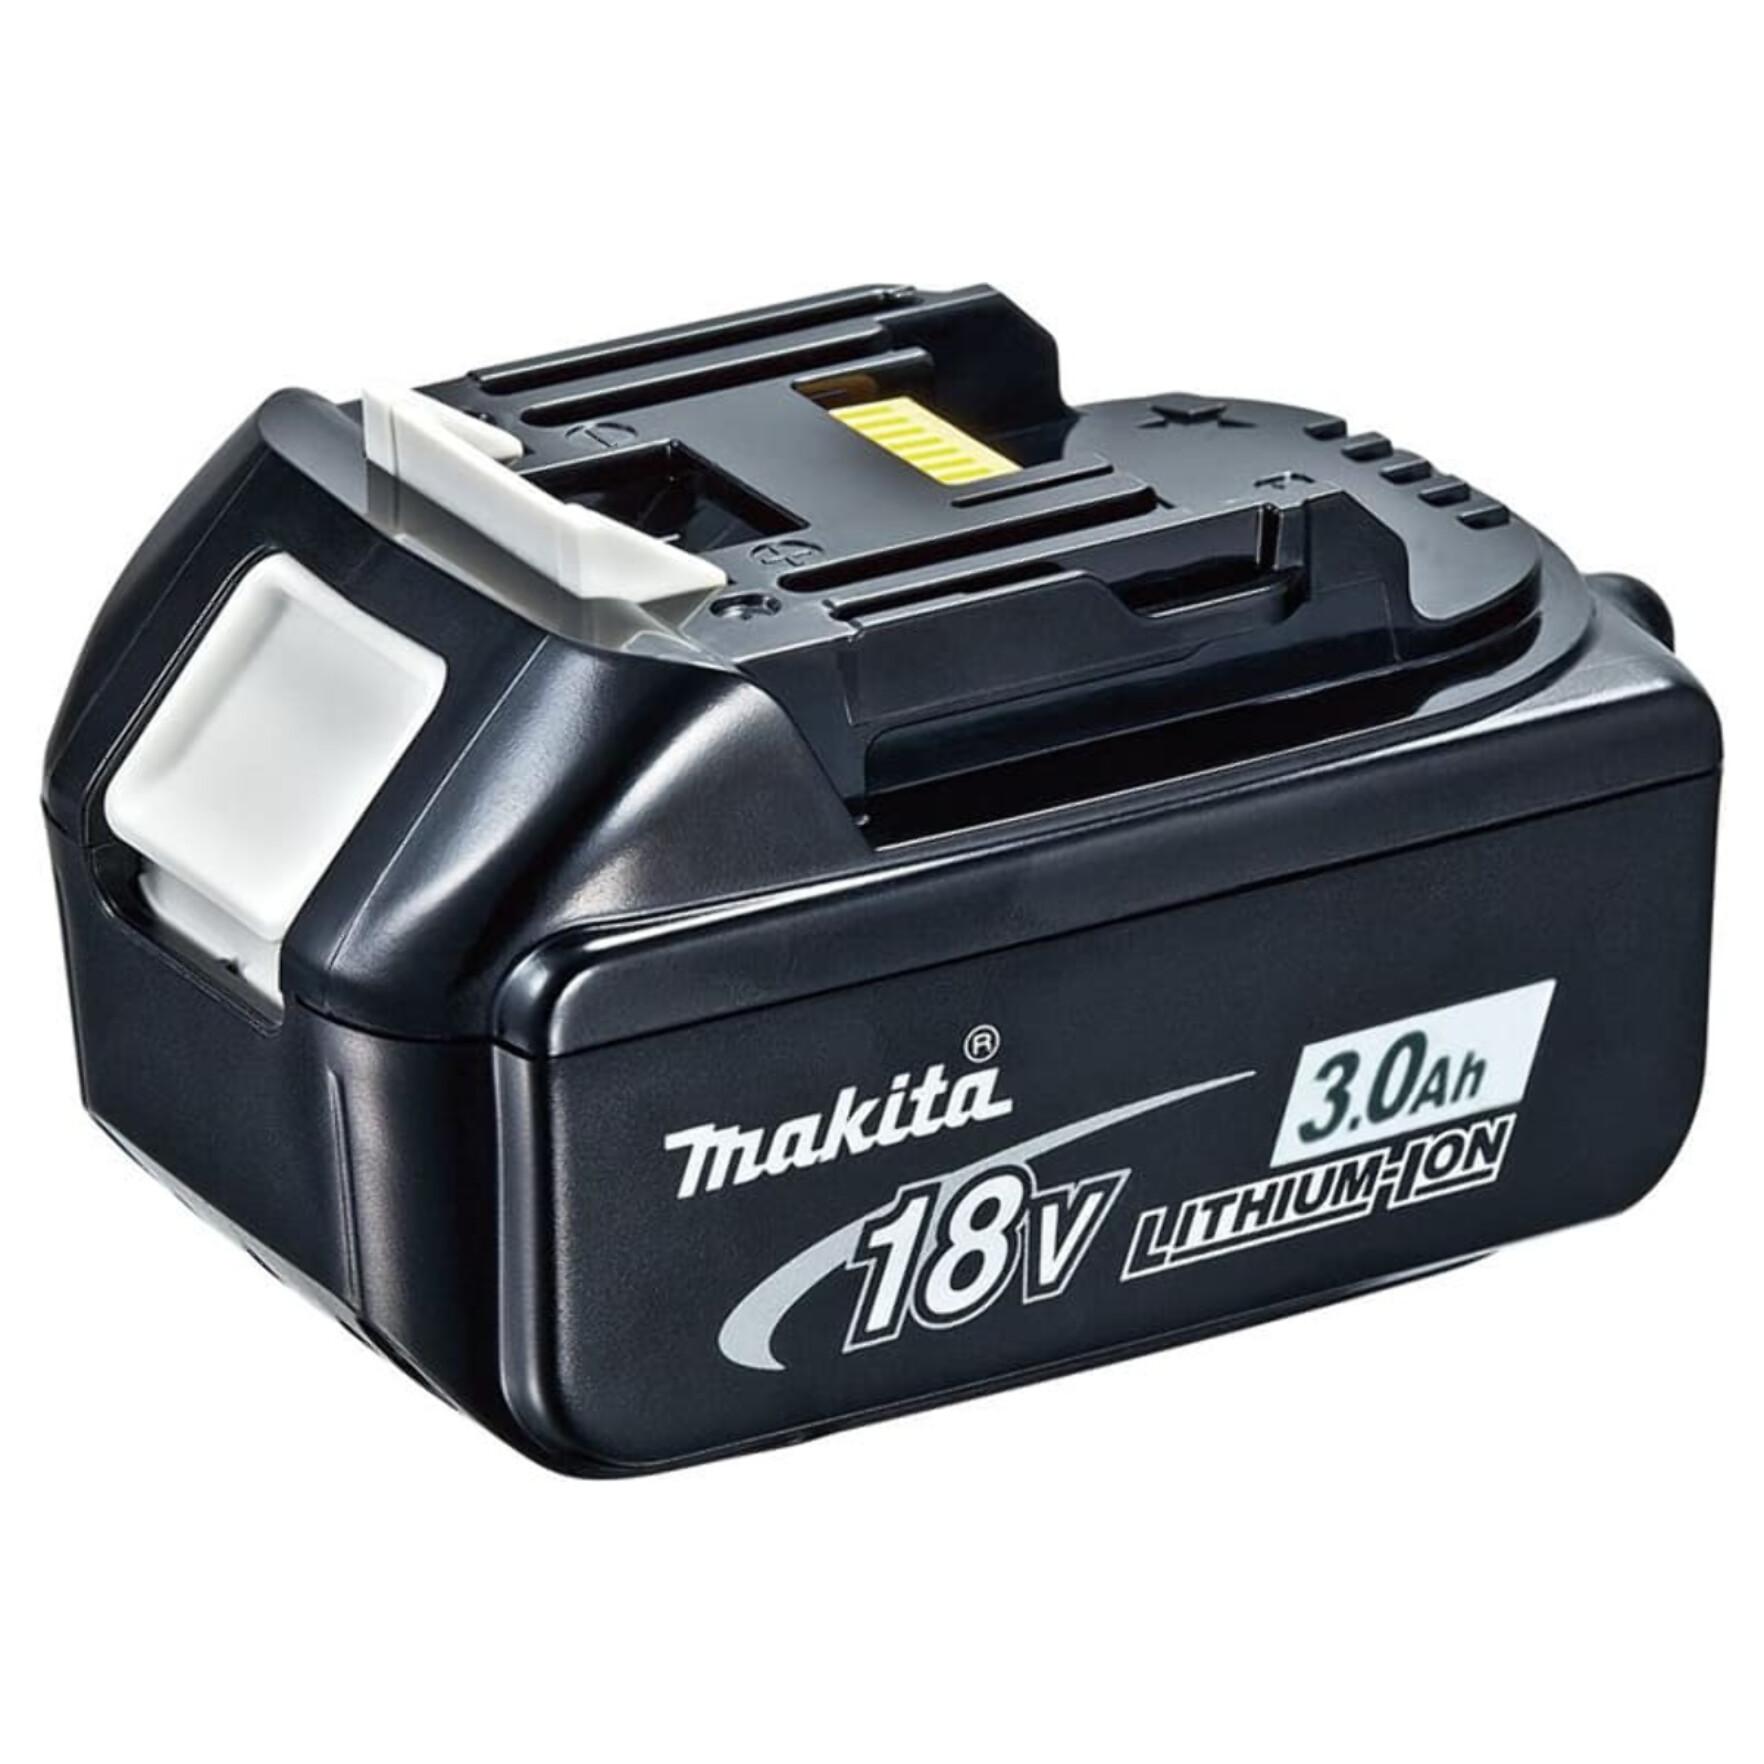 Perceuse-visseuse 18V Black - MAKITA - avec 2 batteries 3Ah + chargeur rapide + coffret avec accessoires - DDF482FX1B